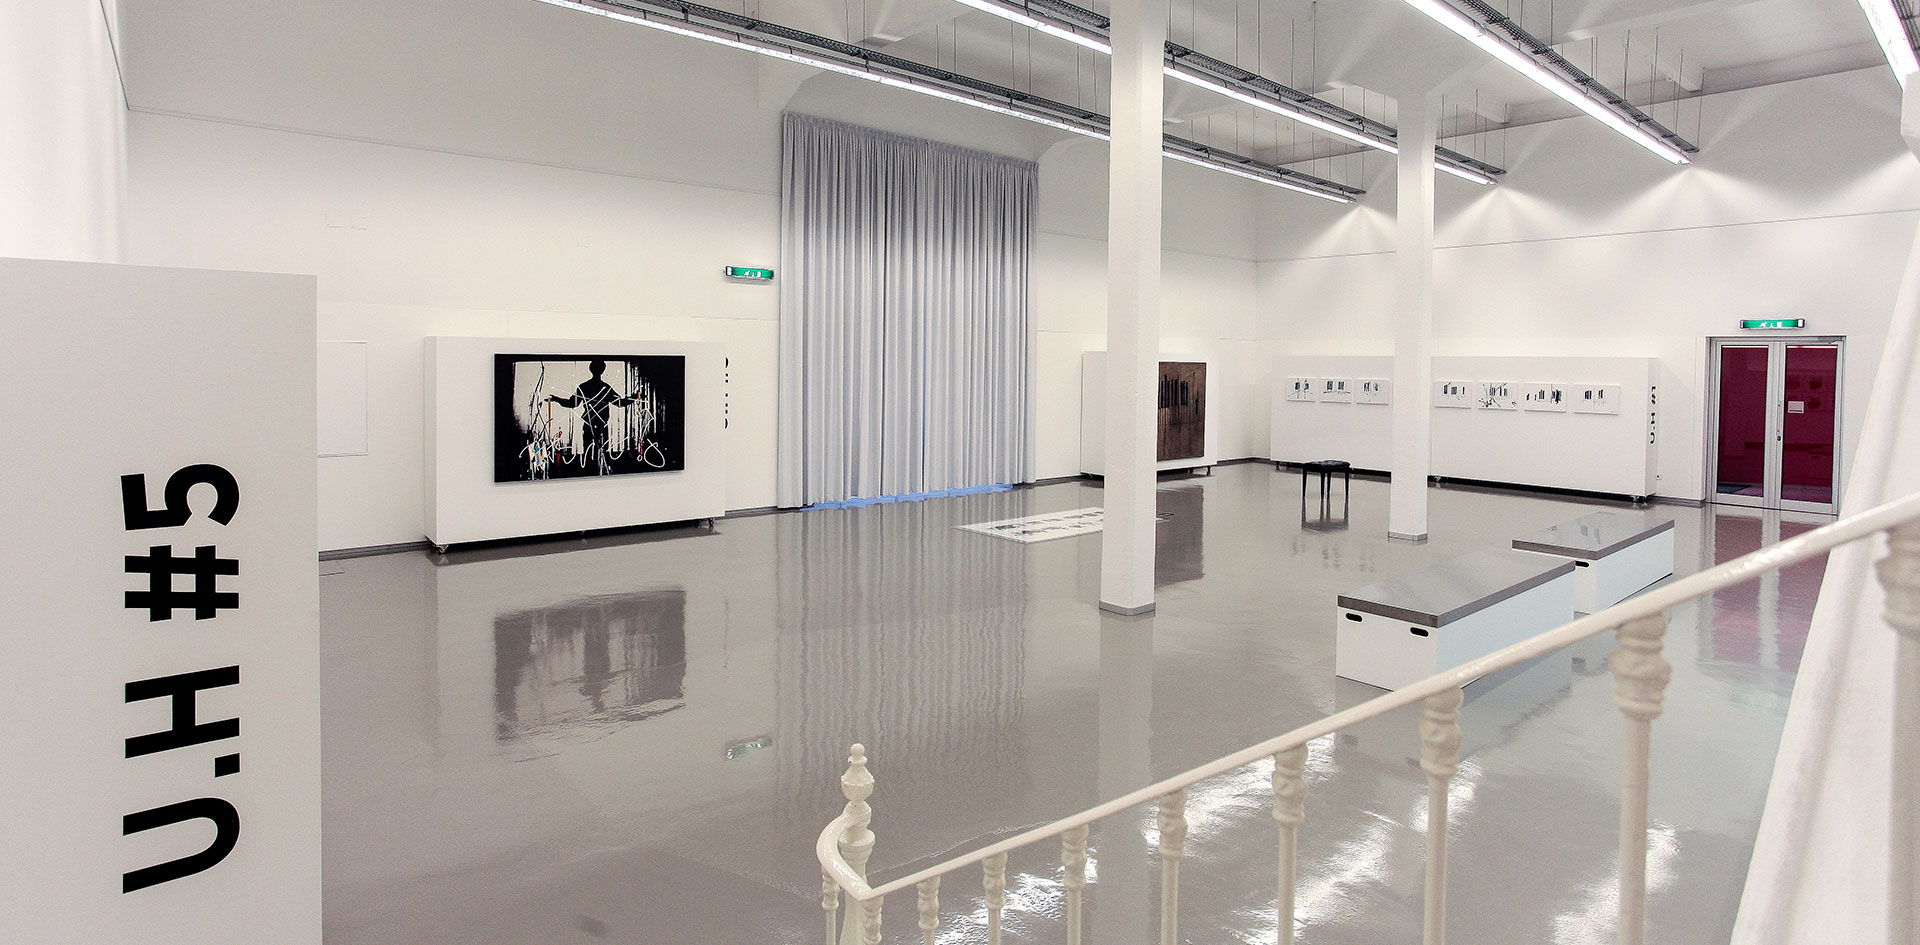 Espaço interior da galeria Quartel - Galeria Municipal de Arte